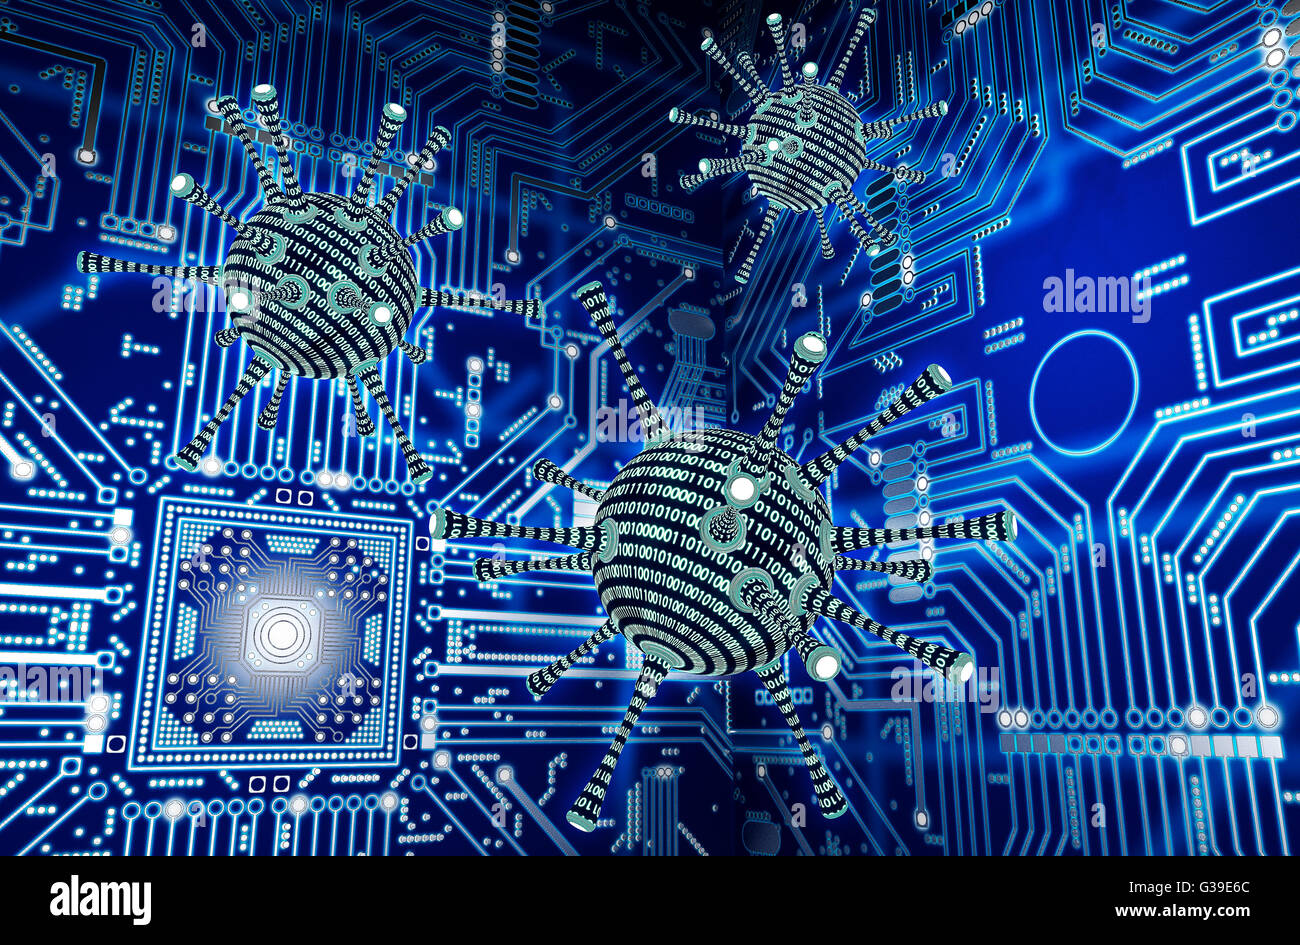 Concept de sécurité numérique virus informatique dans l'environnement électronique, 3D illustration Banque D'Images